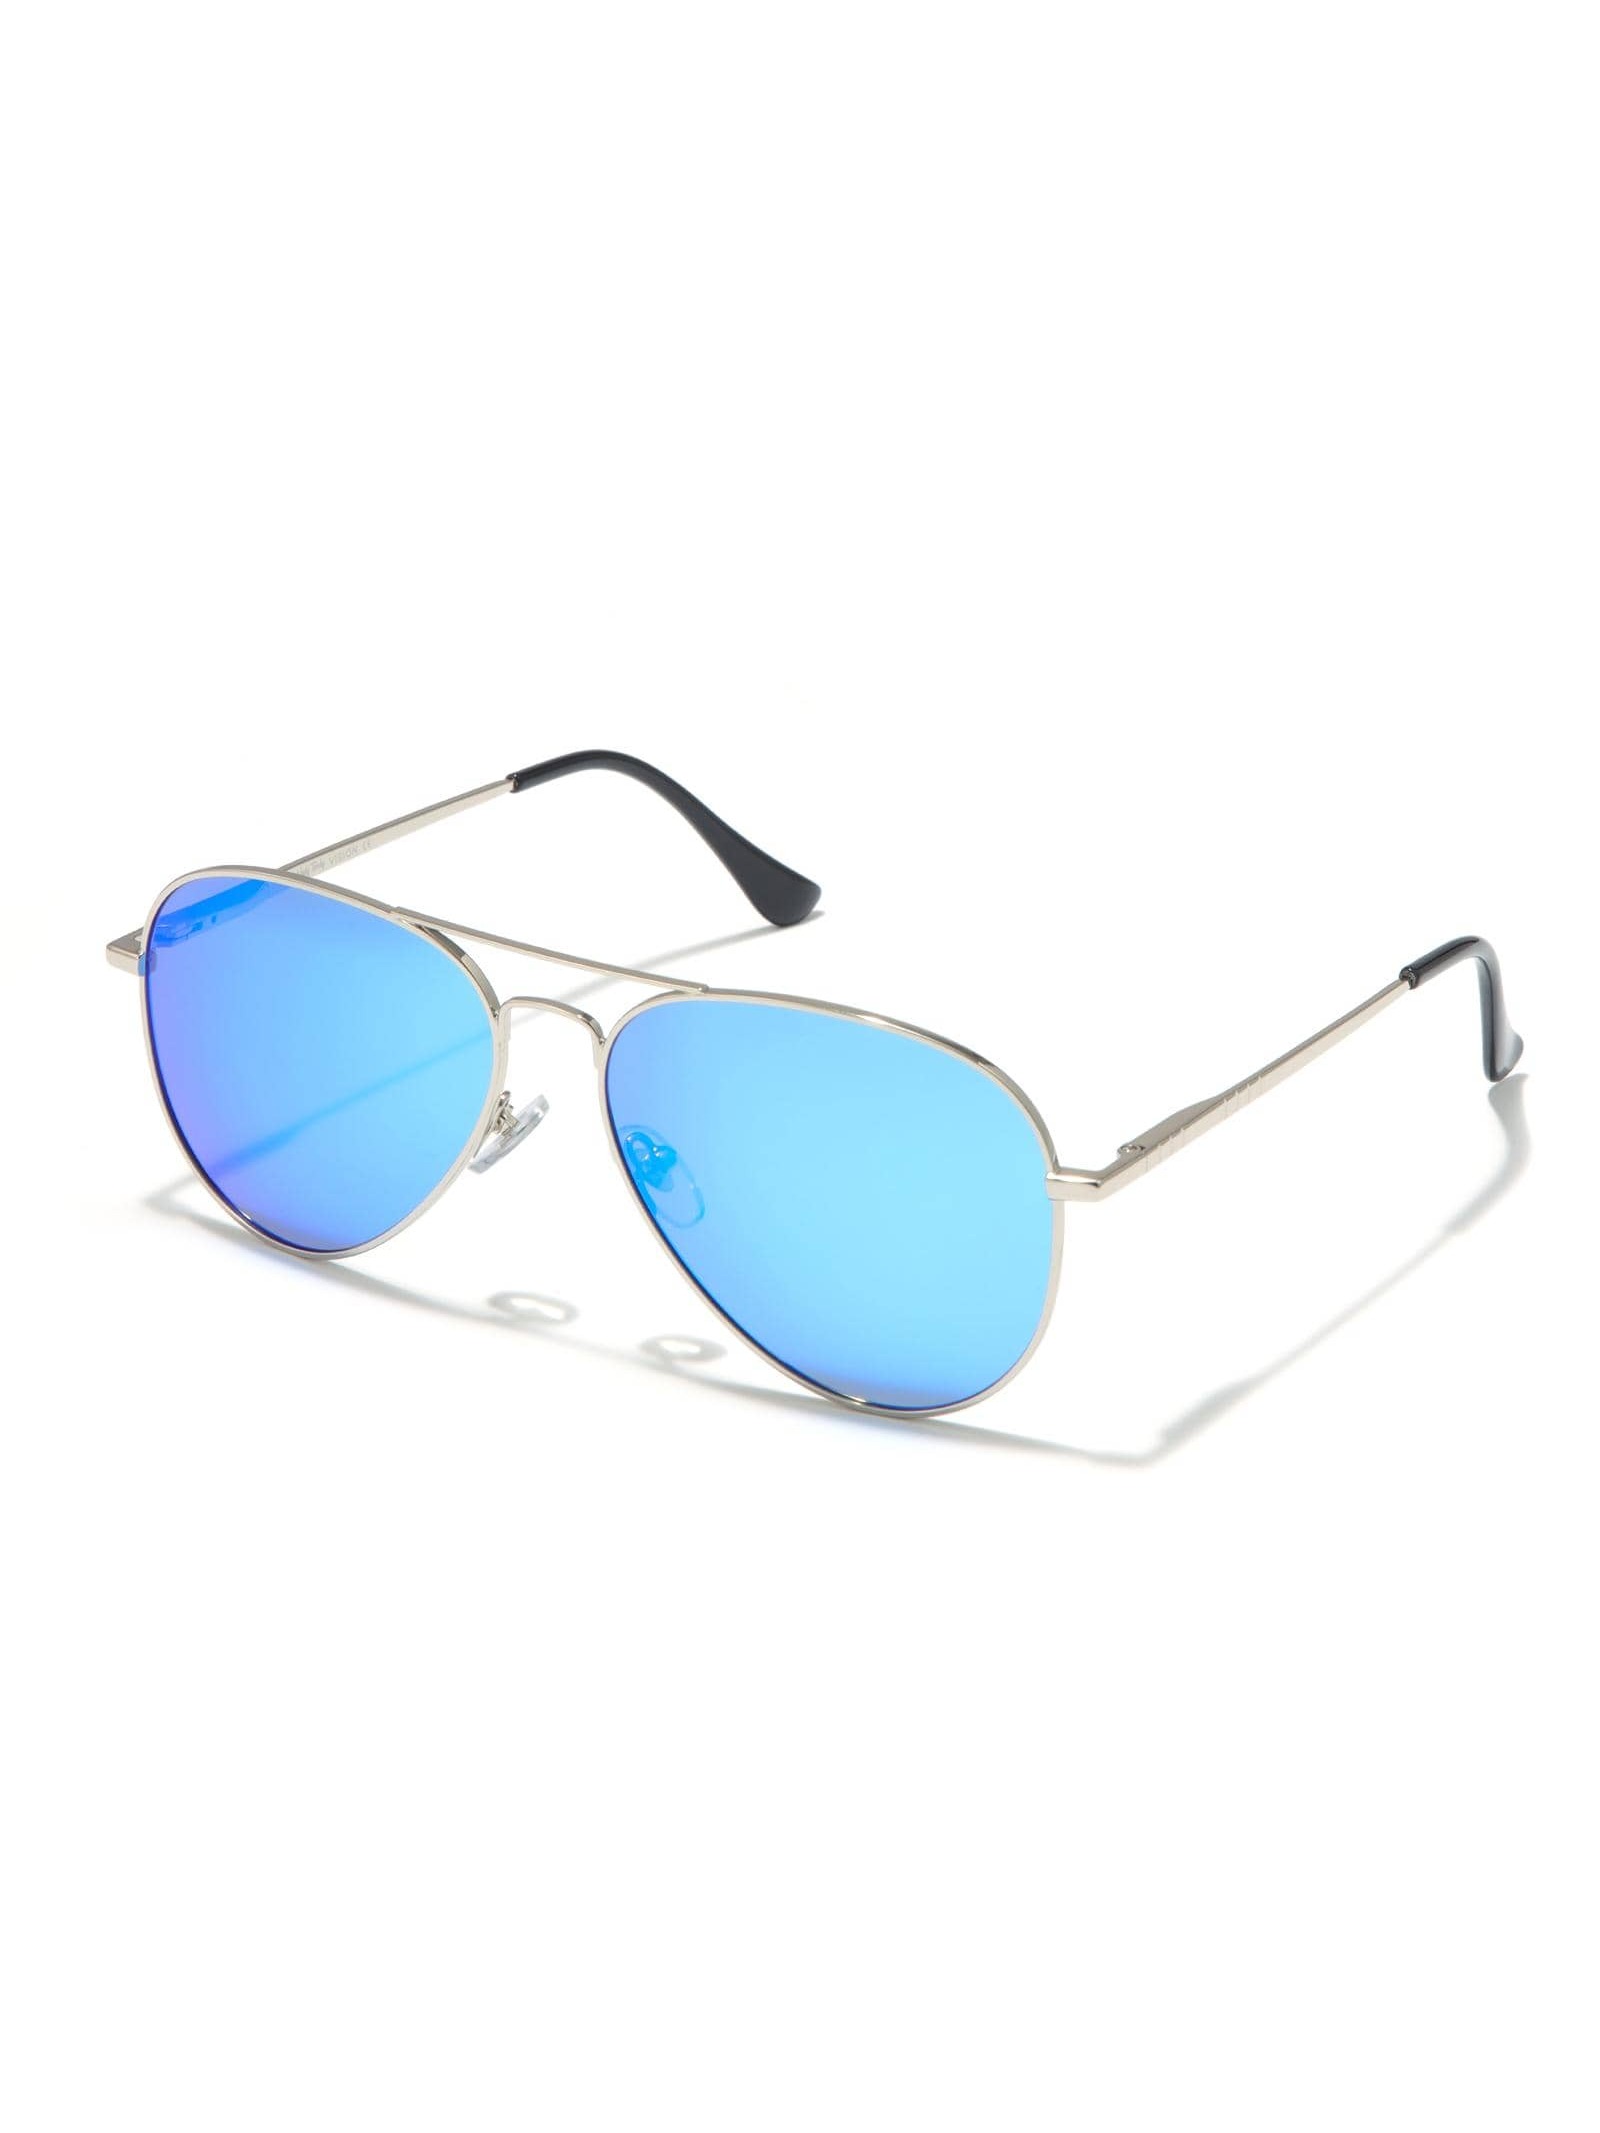 Солнцезащитные очки-авиаторы Veda Tinda для женщин и мужчин мужские солнцезащитные очки без оправы banmar поляризационные очки авиаторы из алюминиево магниевого сплава для вождения uv400 2020